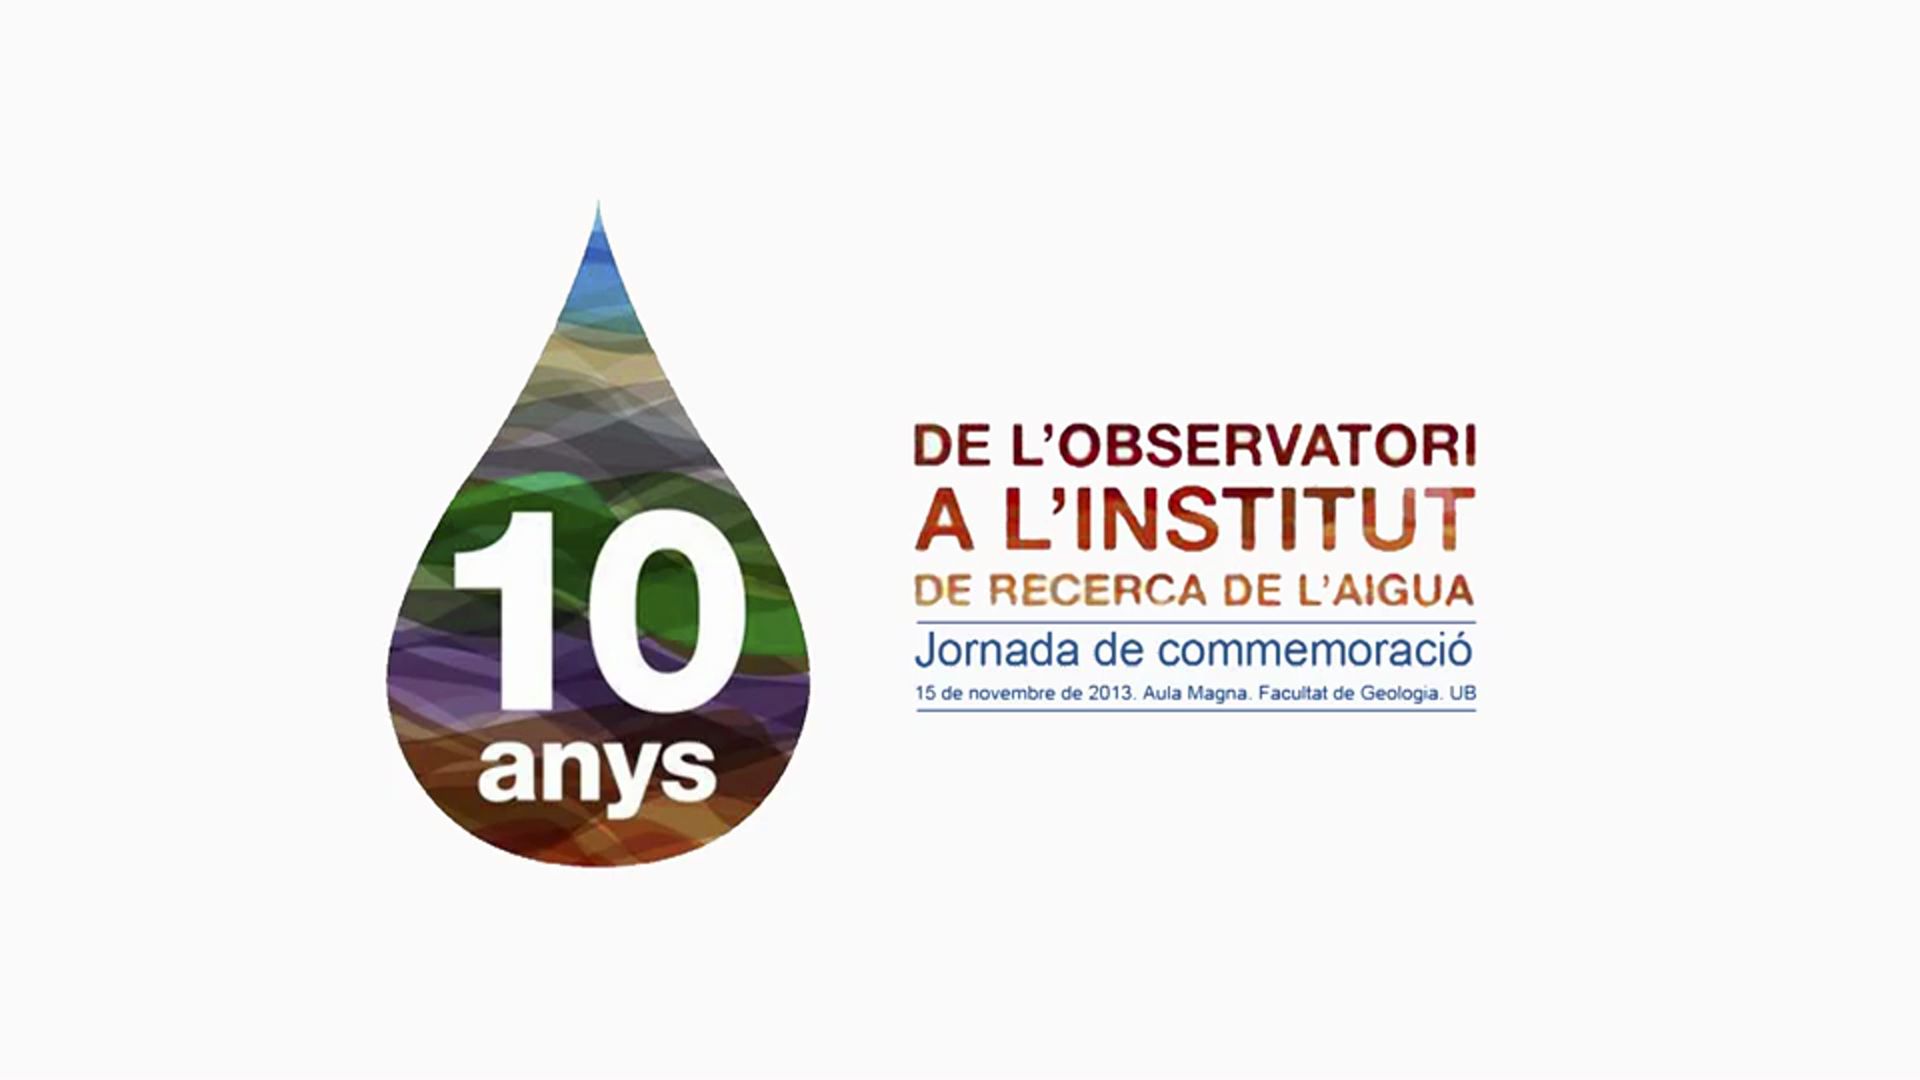 10 anys de l'Observatori a l'Institut de Recerca de l'Aigua